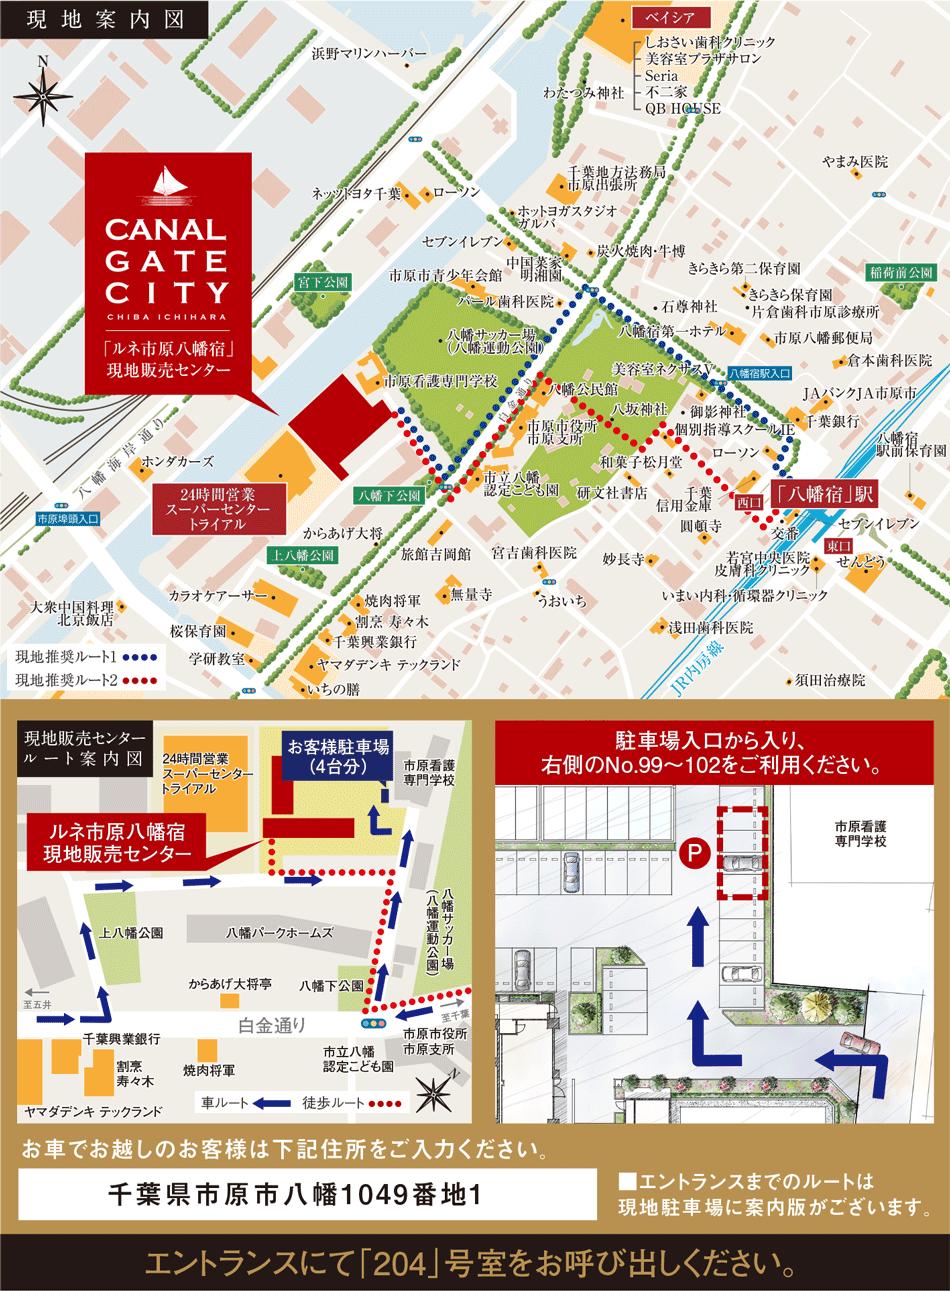 ルネ市原八幡宿(CANAL GATE CITY(キャナルゲートシティ)プロジェクト)のモデルルーム案内図